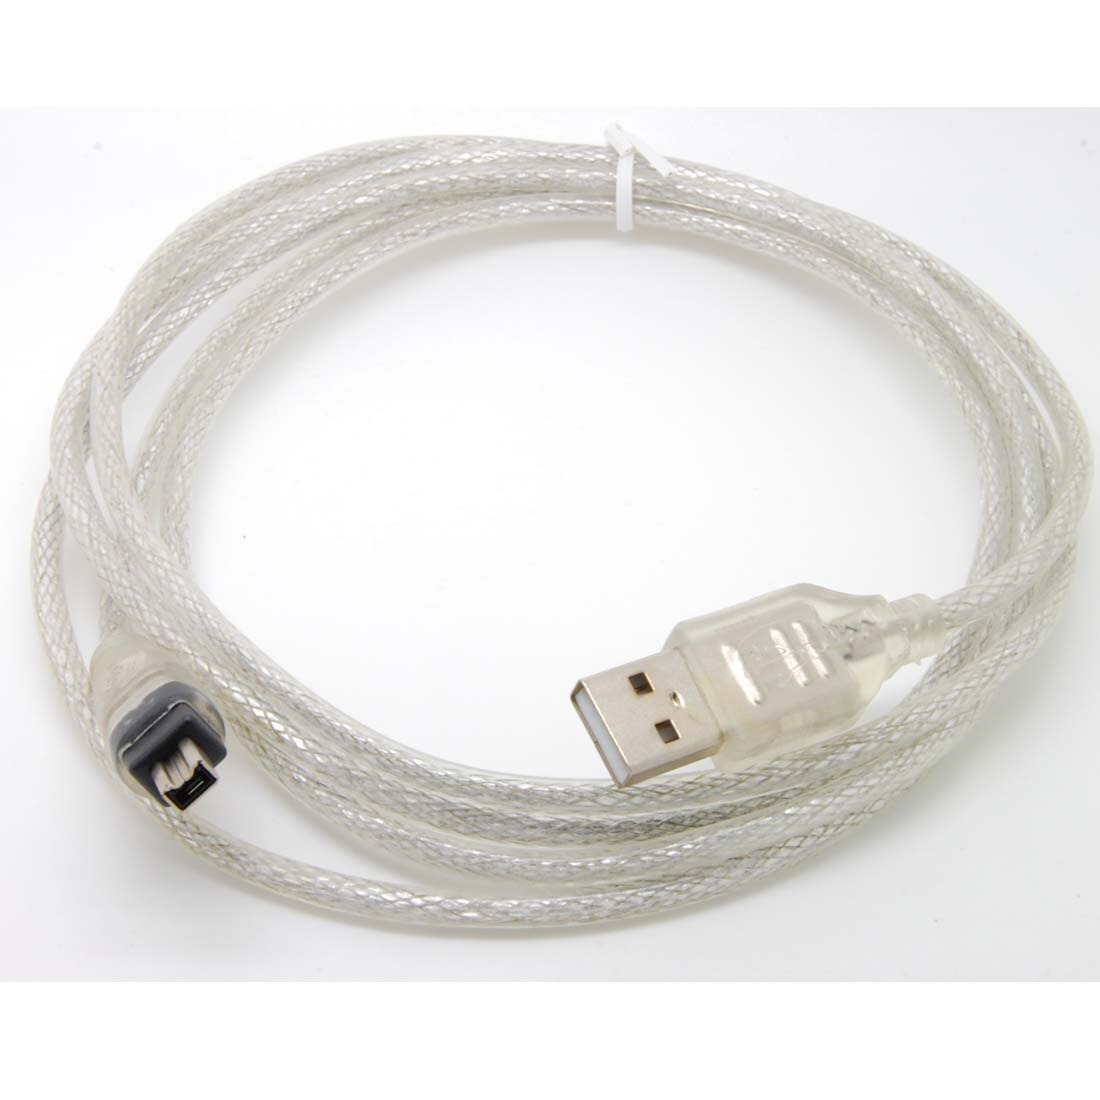 4 voeten USB usb2.0 Data kabel Firewire IEEE 1394 voor MINI DV HDV camcorder te bewerken pc Gratis shippingnew